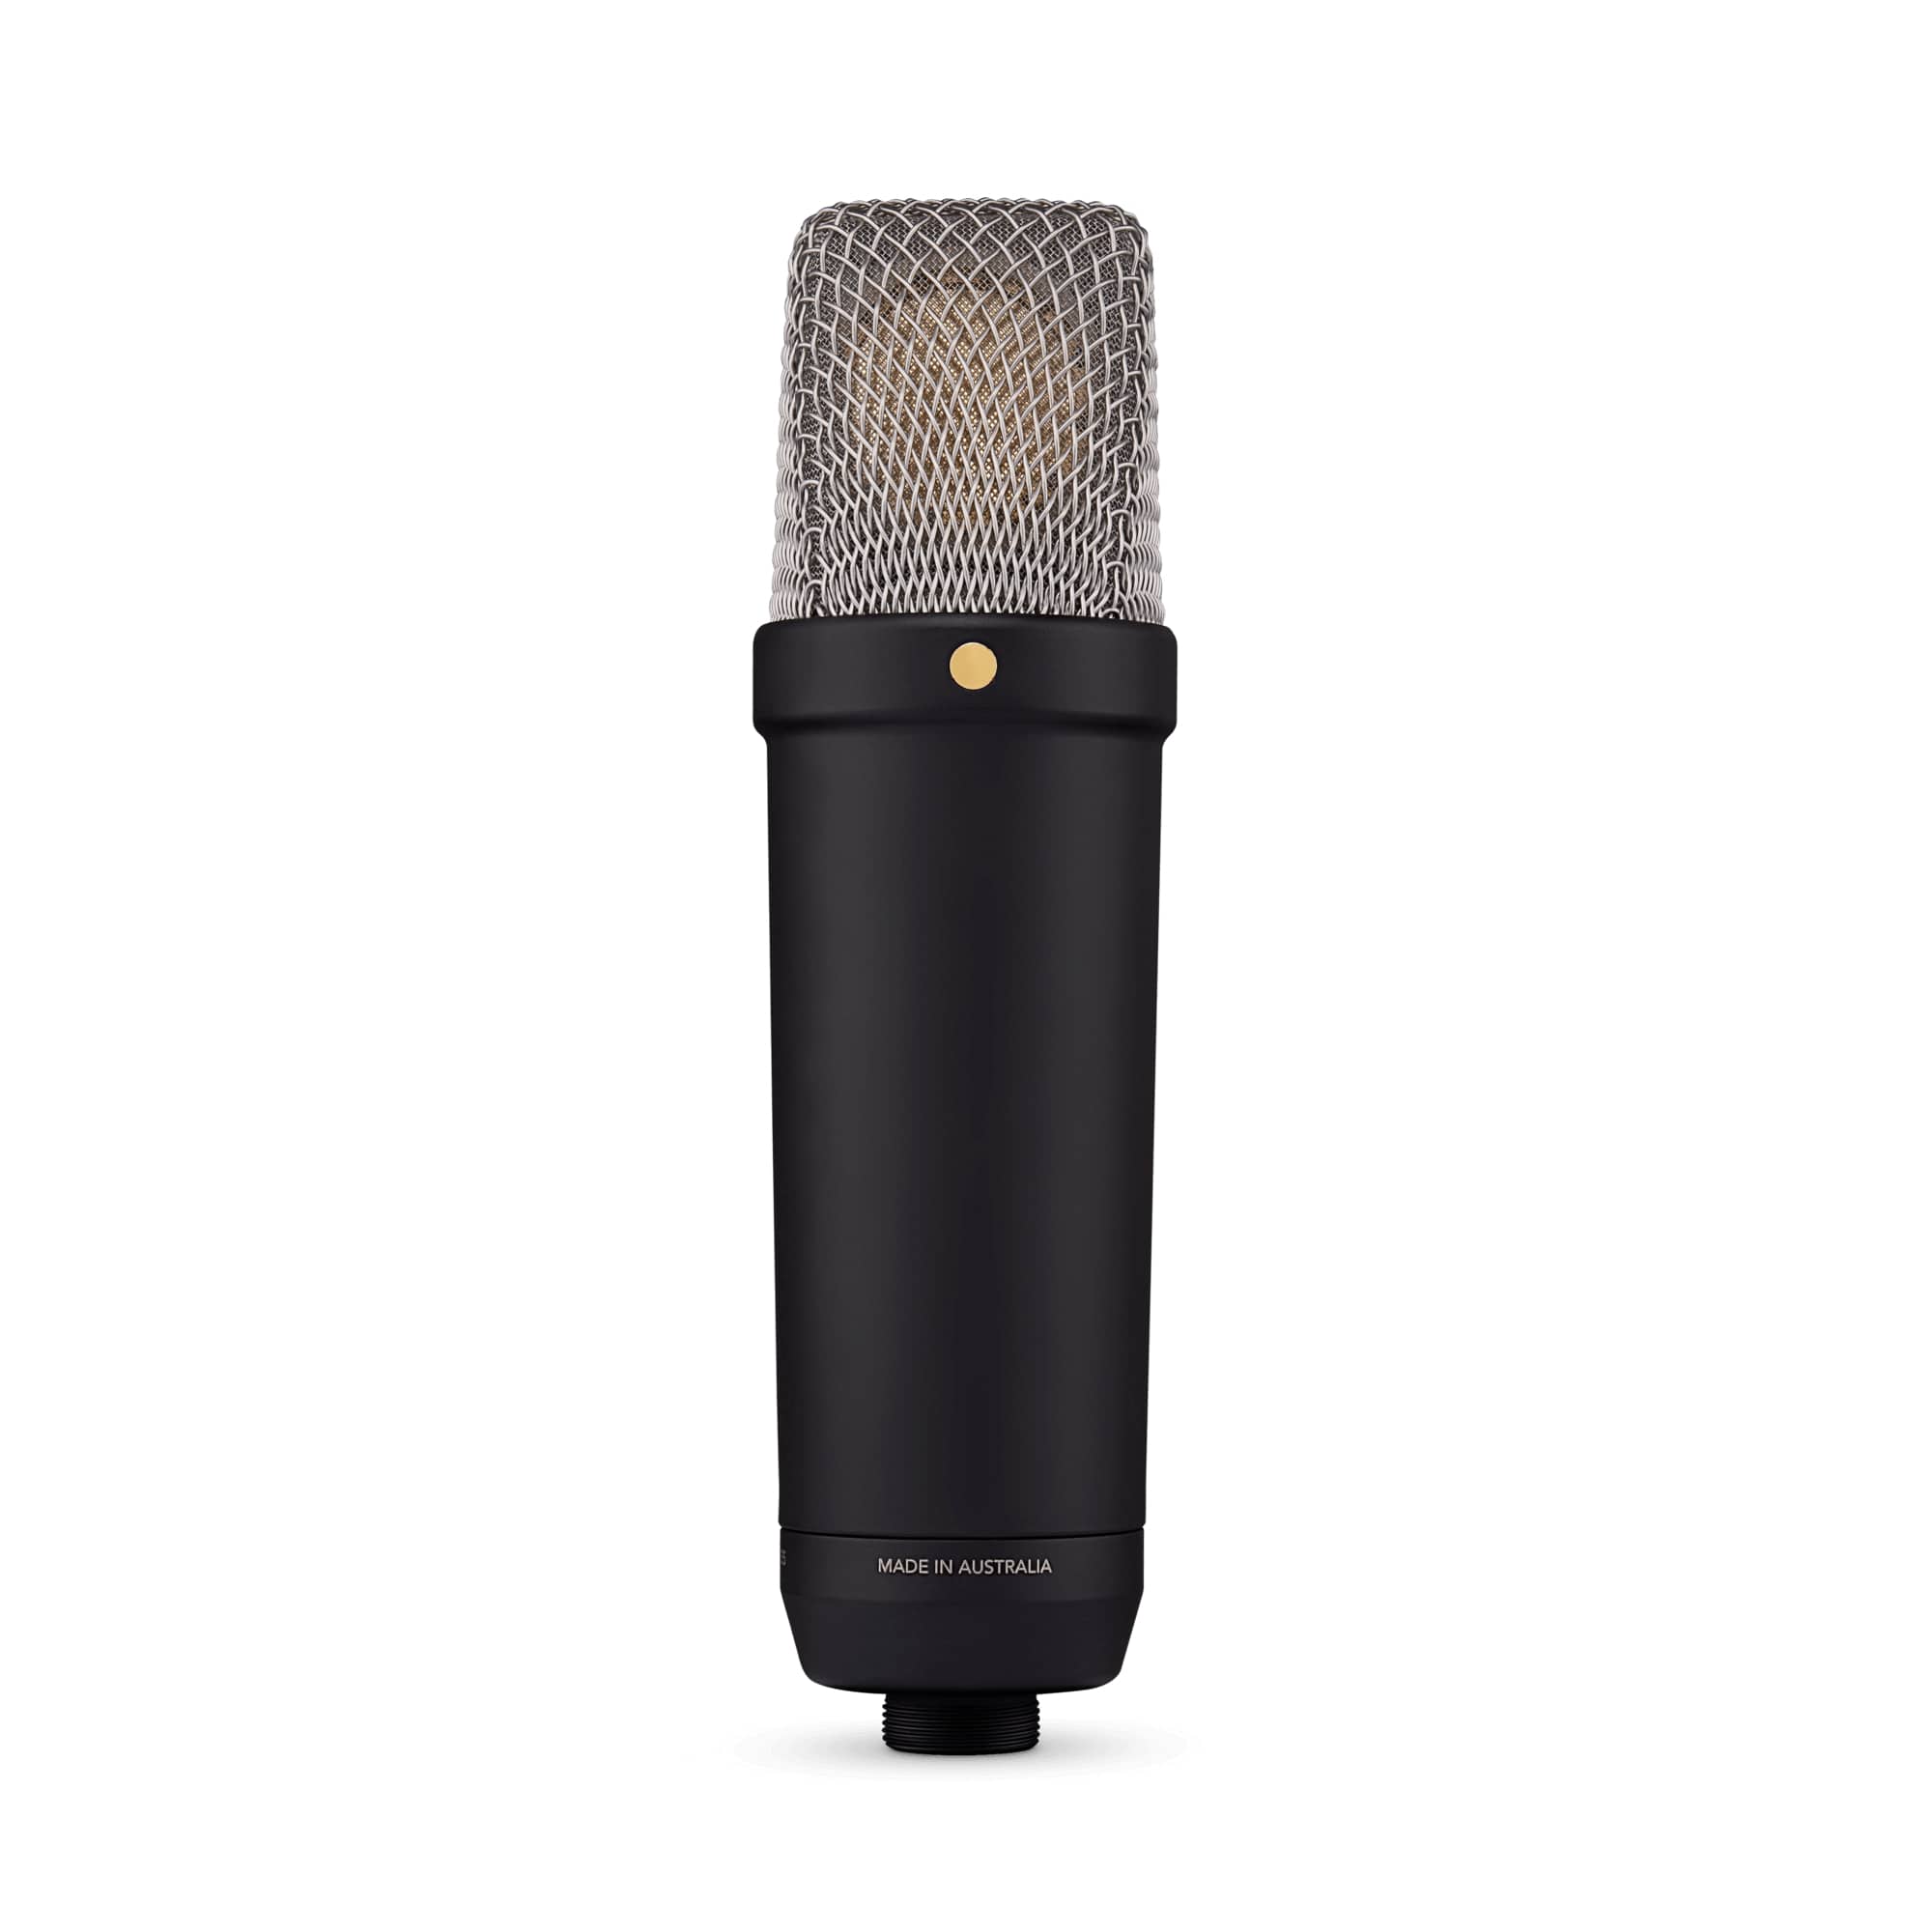 Студийные микрофоны Rode NT1 5th Generation Black студийные микрофоны brauner vmx